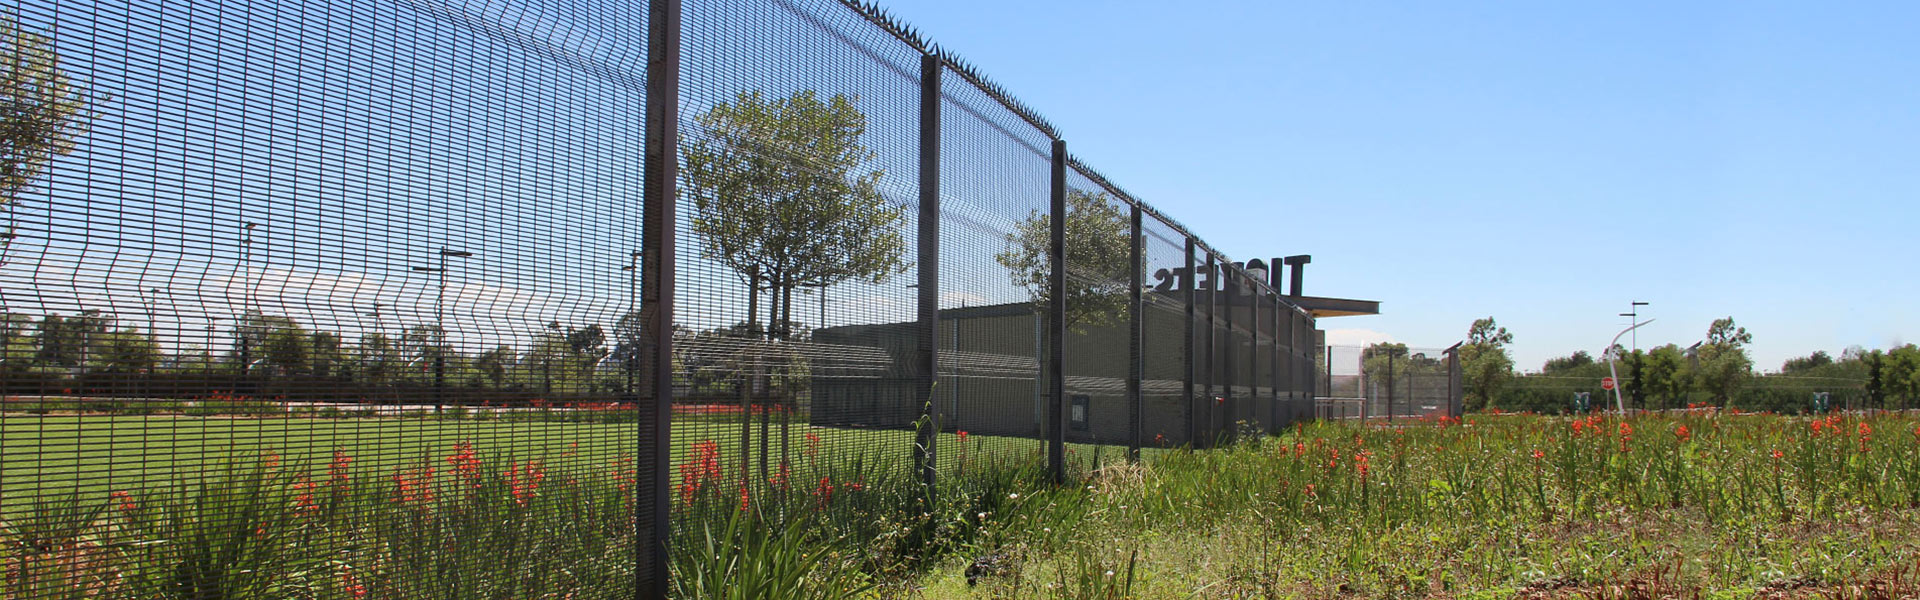 桥梁防落网,护栏网片,防抛网,防护栅栏,高速护栏网,绿色护栏网,隔音墙,隔离栅